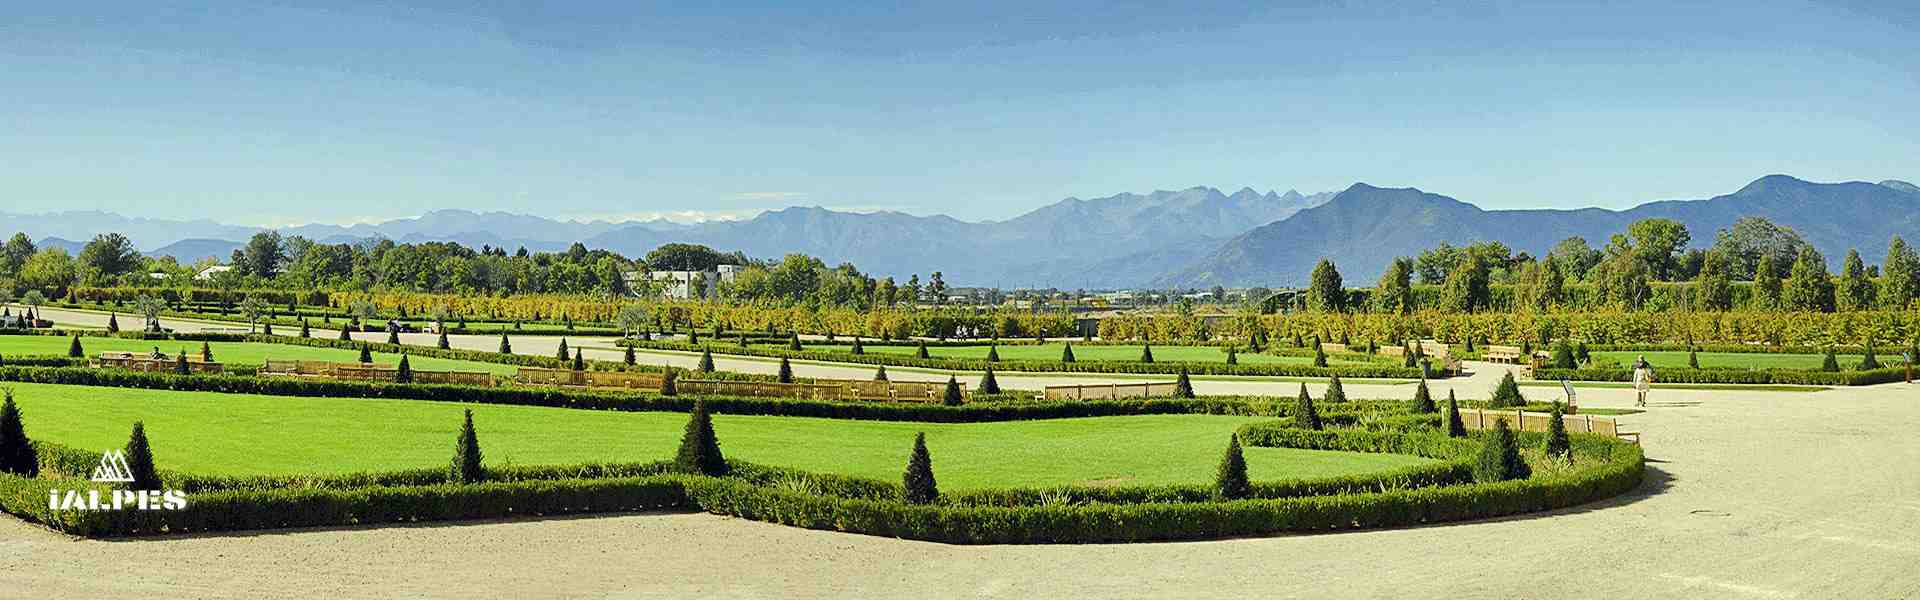 Jardins royaux de la Veneria Real, Turin